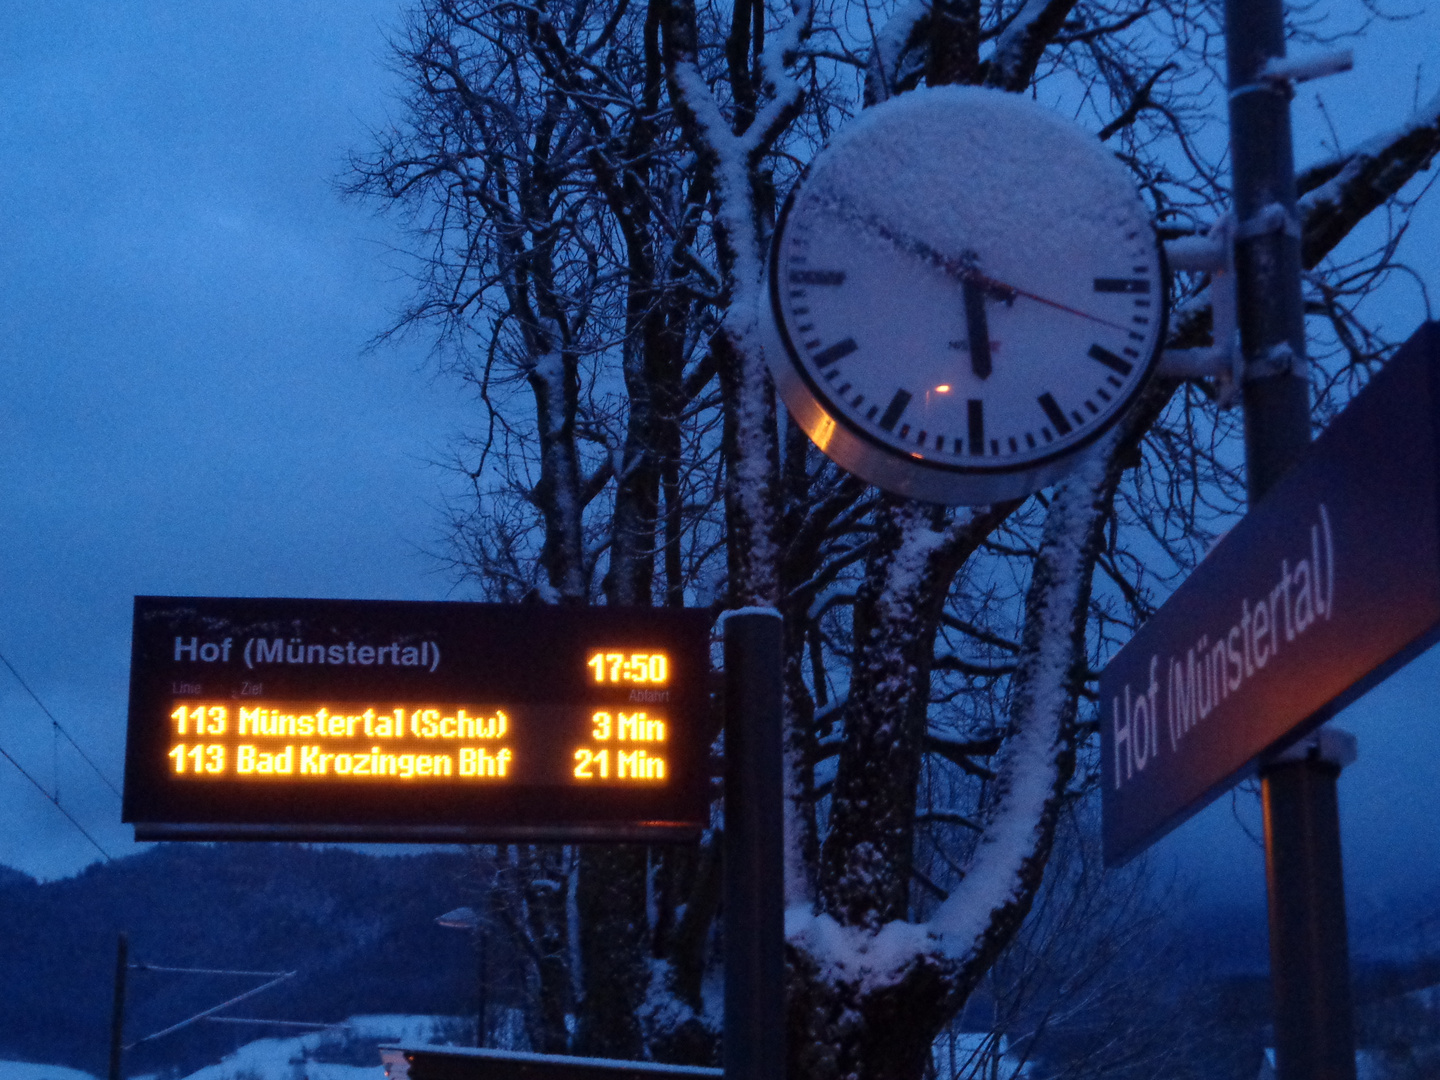 Haltepunkt Hof/Münstertal um 17.49 Uhr und 18 Sekunden